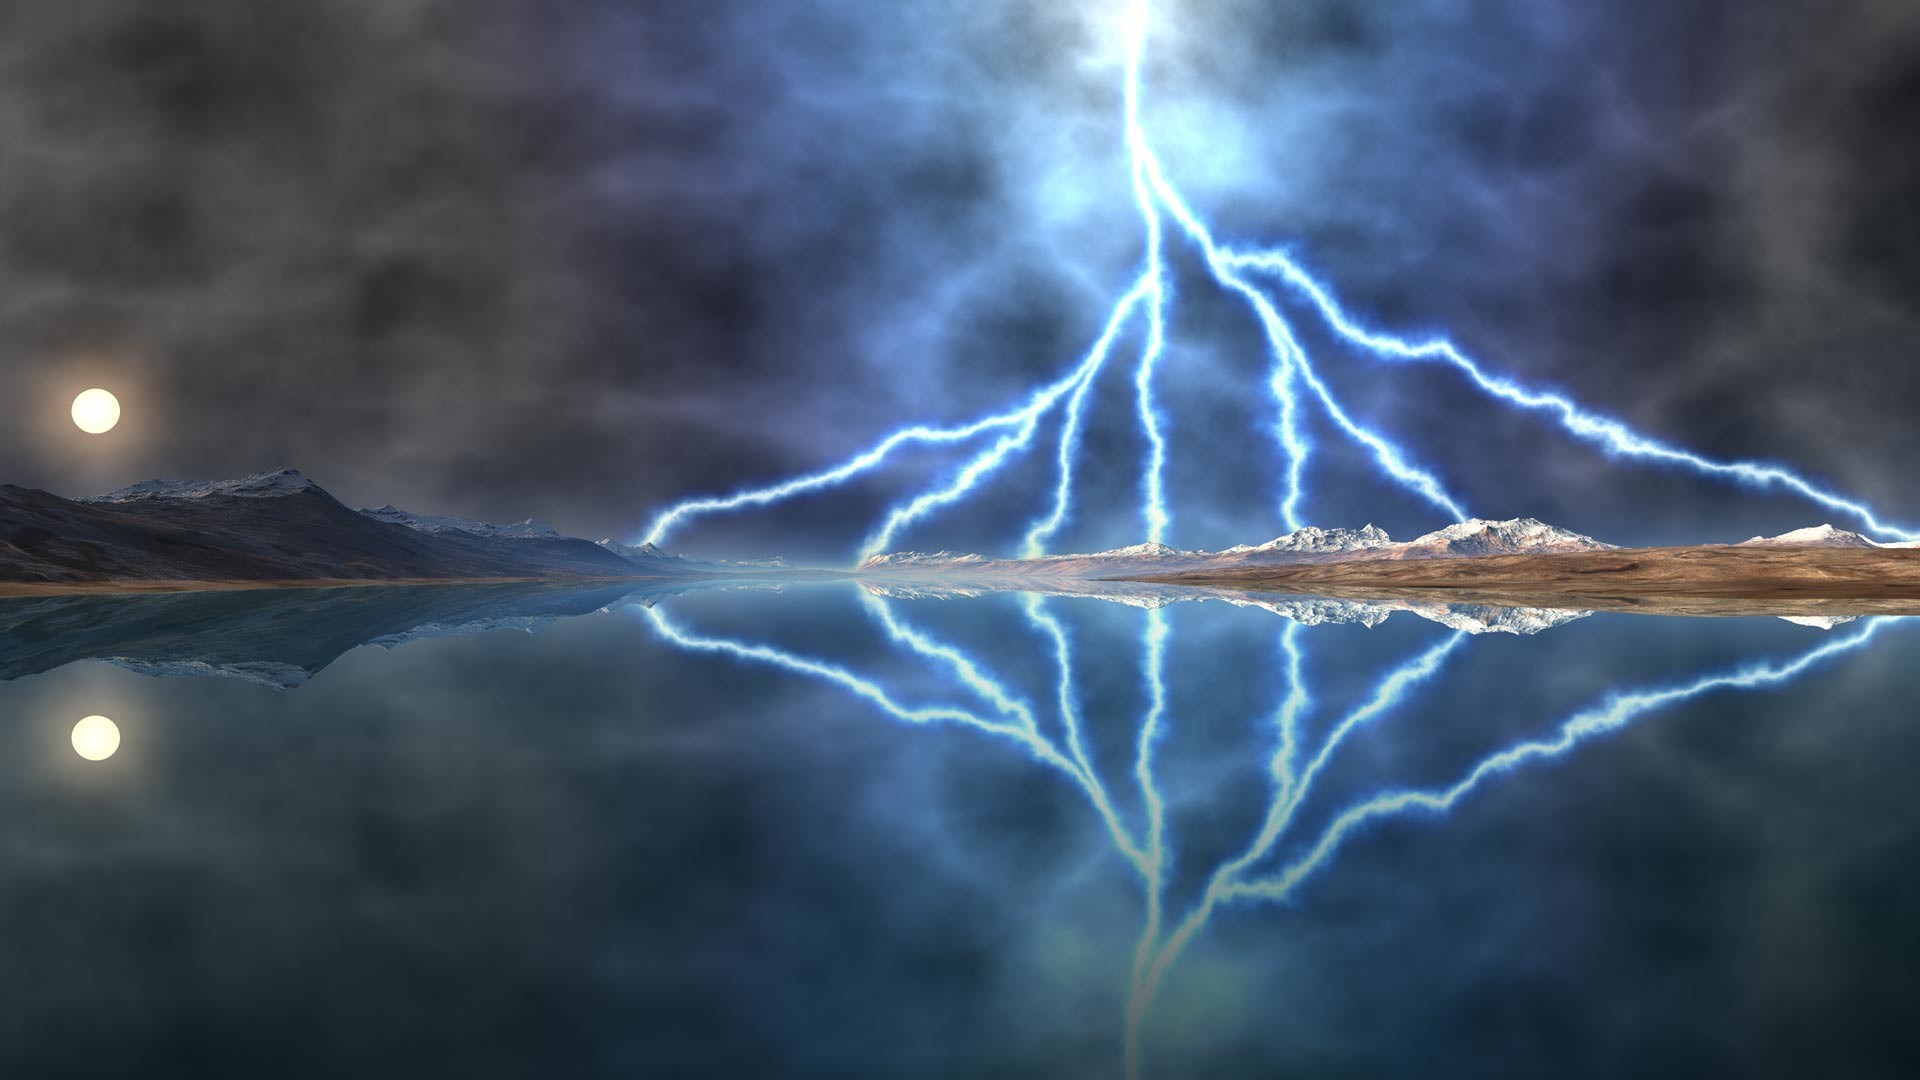 Lightening storm over lake desktop background. Landscape background for use as a desktop wallpaper picture